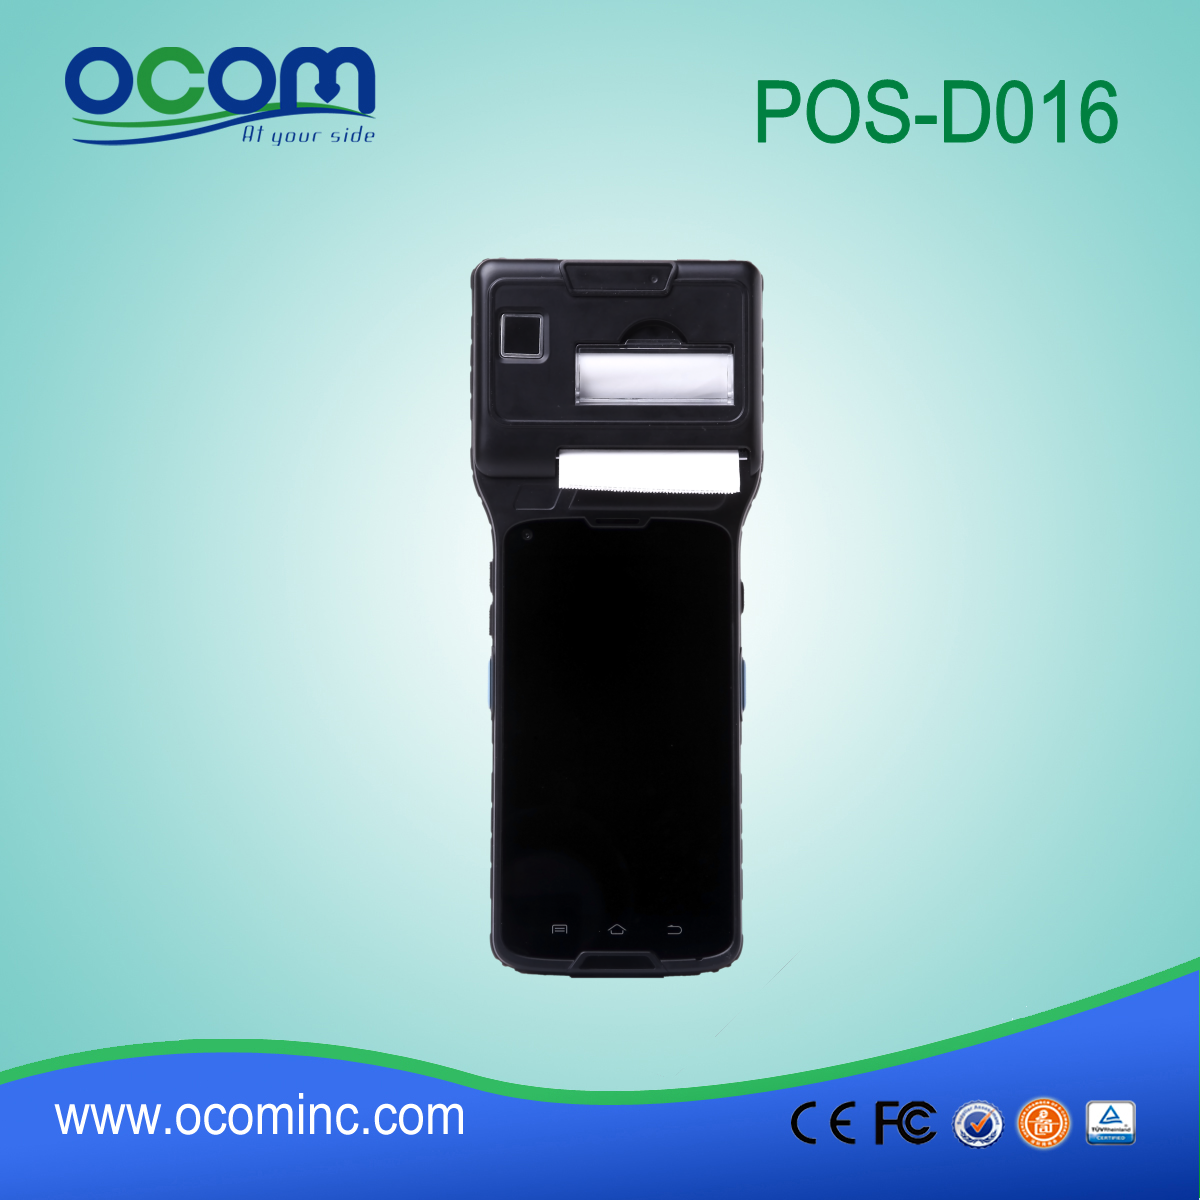 5 '' сенсорный экран Pos терминал с поддержкой 3G (WCDMA) + WIFI + BT + GPS + камера + термопринтер + NFC (OCBs-D016)